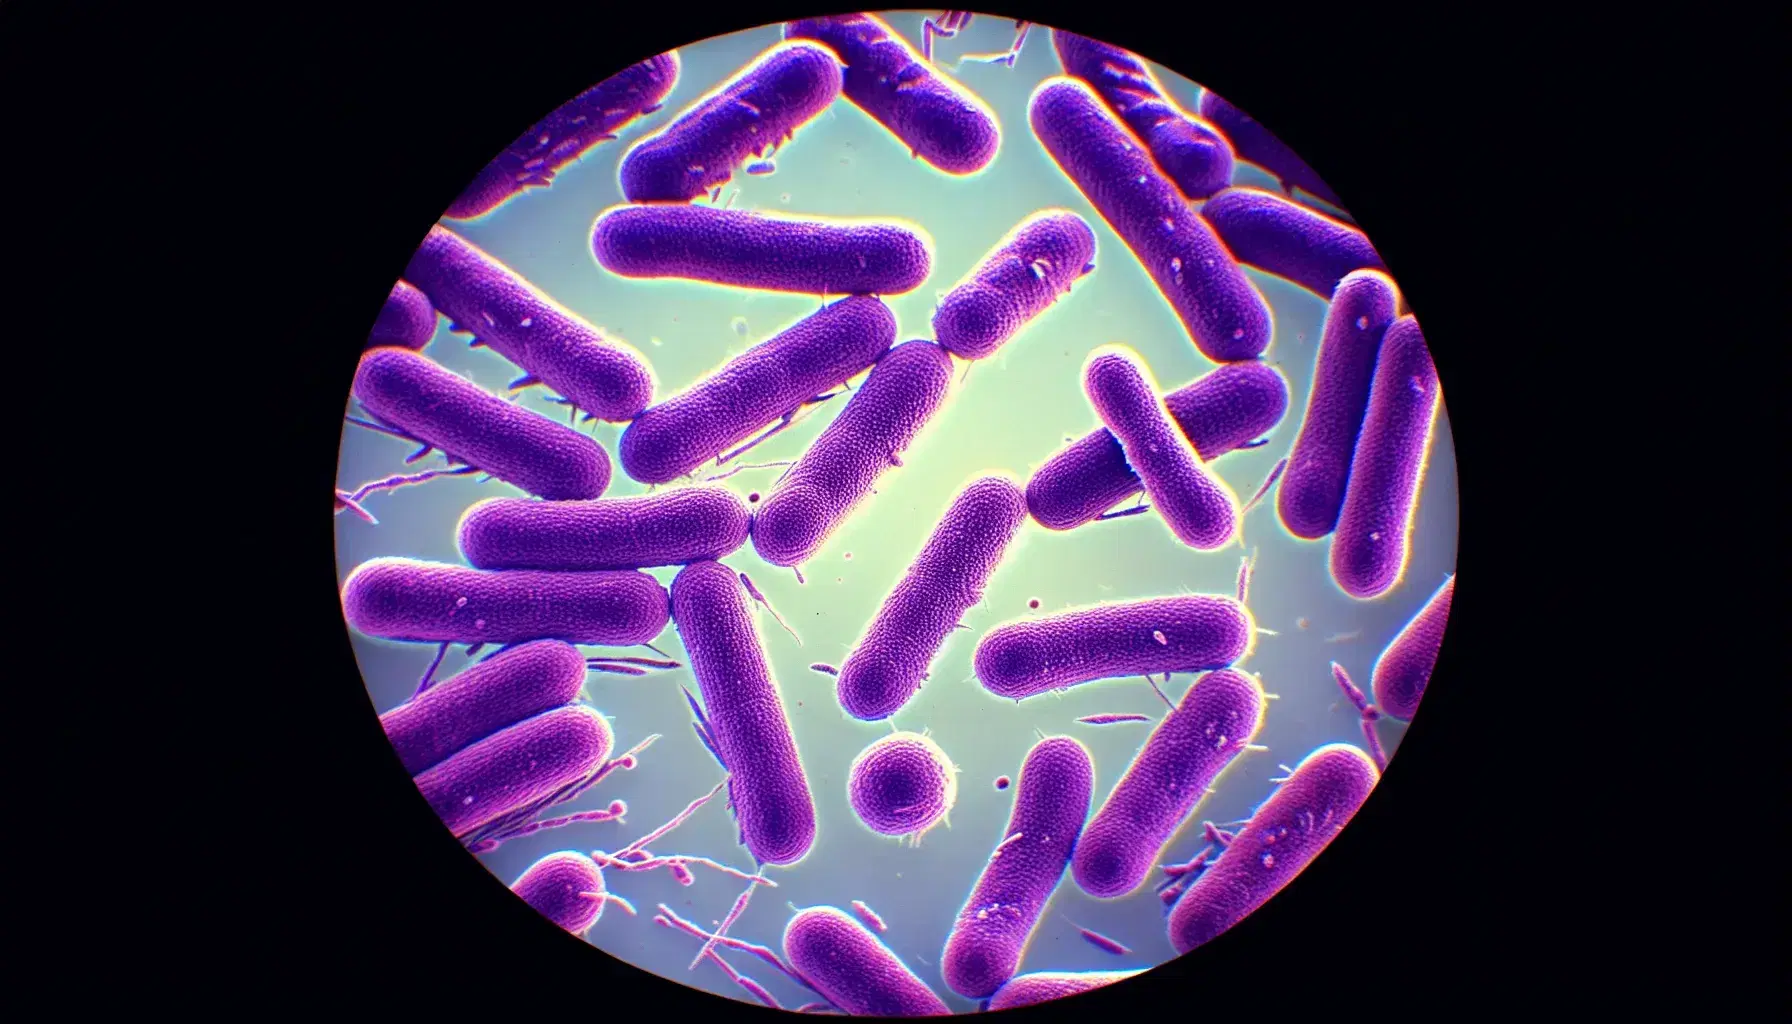 Microscopía óptica de campo claro mostrando bacterias teñidas, con bacilos en violeta intenso en el centro y cocos más claros en la periferia.